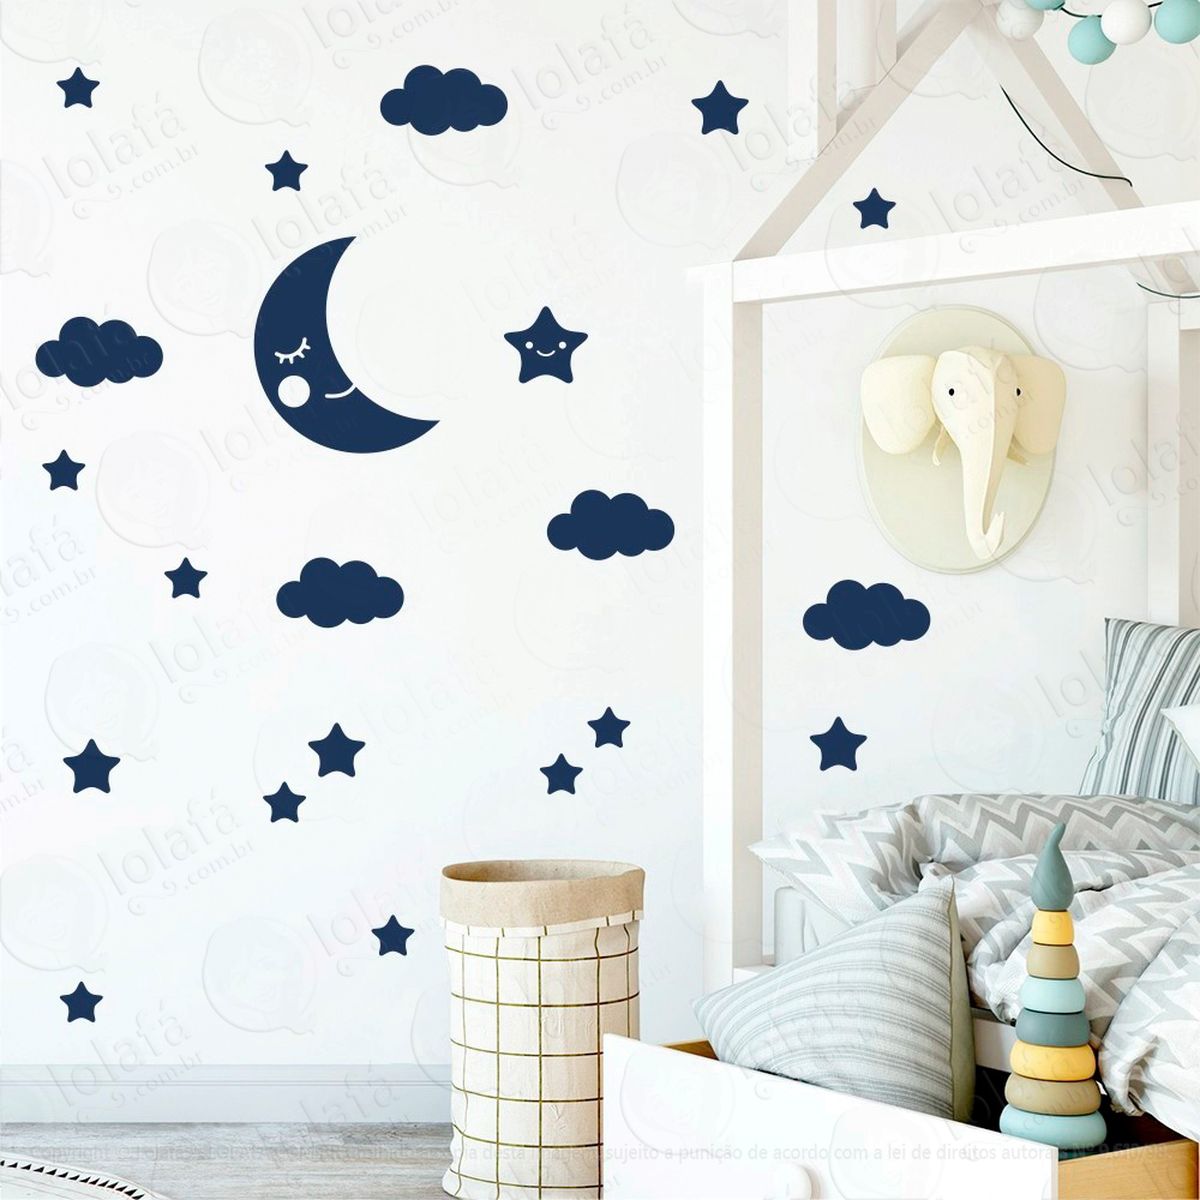 adesivos lua nuvens e estrelas 62 peças adesivos para quarto de bebê infantil - mod:632